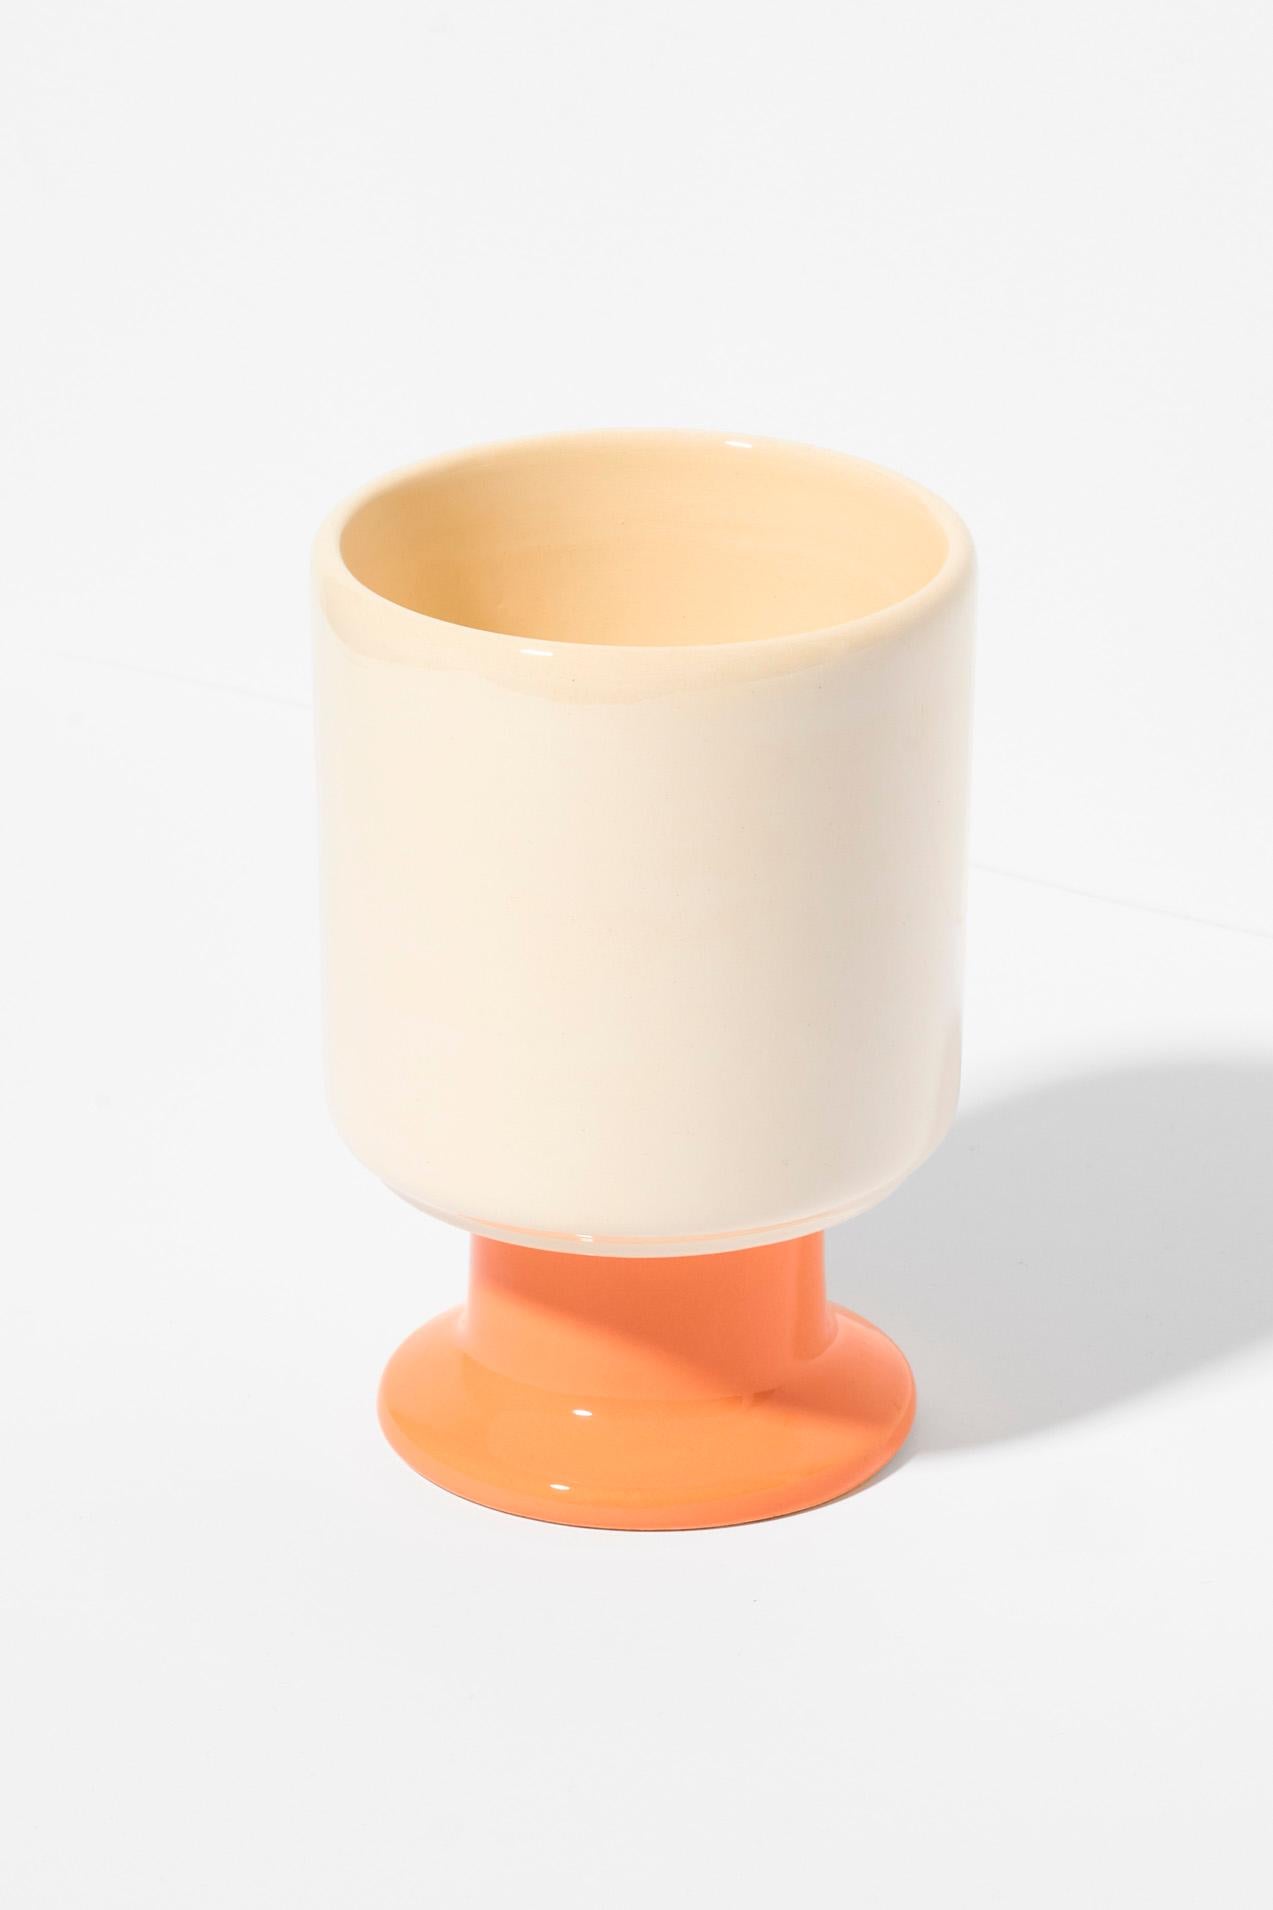 Die WIT-Tasse ist ein multifunktionales Gefäß mit einem verspielten Stiel. Er kann zu Ihrer Lieblingskaffeetasse, einer Dessertschale, einem Behälter für Stifte oder anderen Lieblingsaccessoires werden. Die Kelche von WIT können zu stabilen Türmen